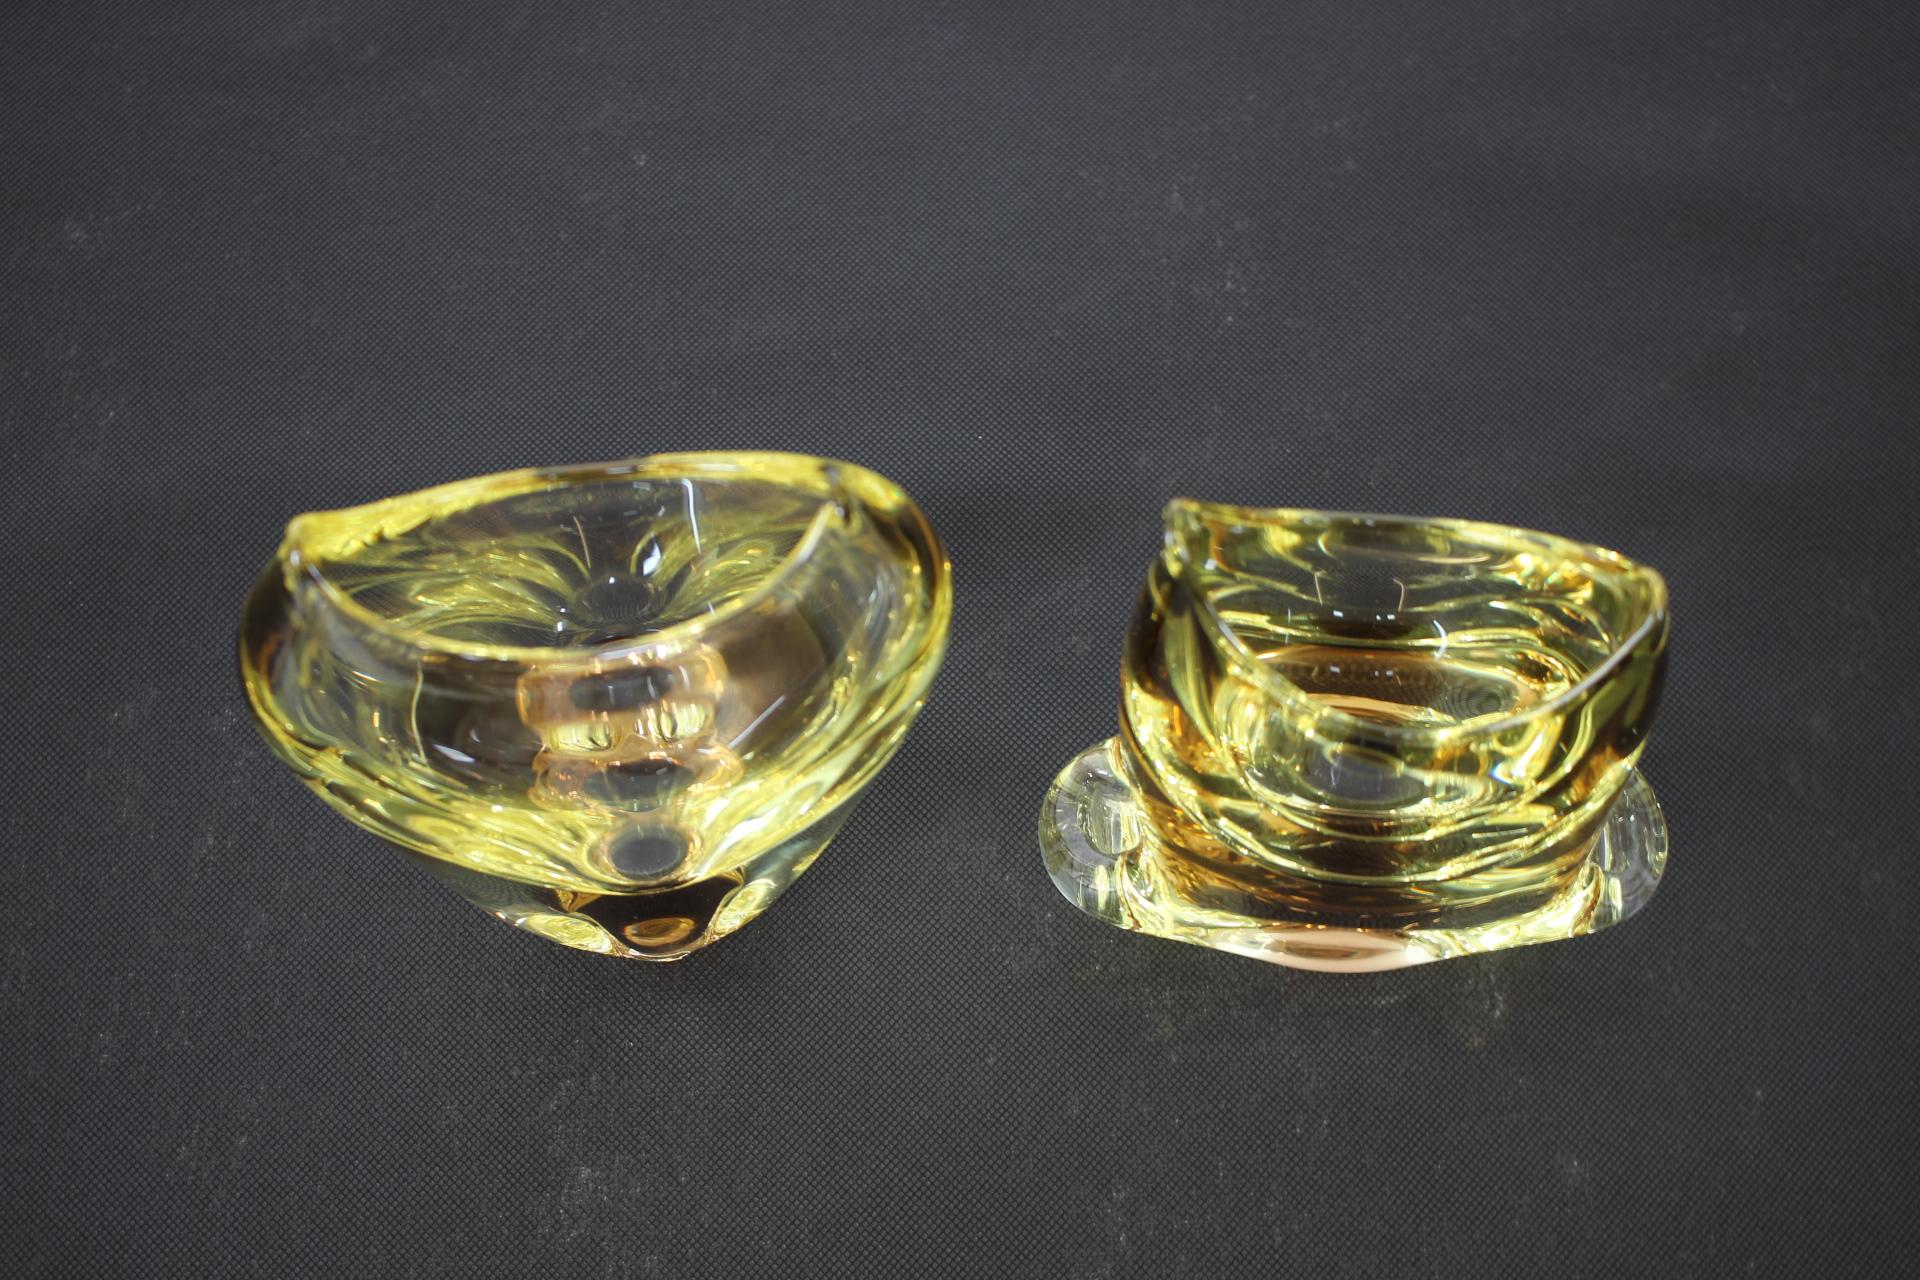 - Hergestellt in der Tschechoslowakei
- Hergestellt aus Glas
- Abmessungen kleine Vase sind H 17 x B 14 x T 6
- Neu poliert
- Sehr guter, ursprünglicher Zustand.